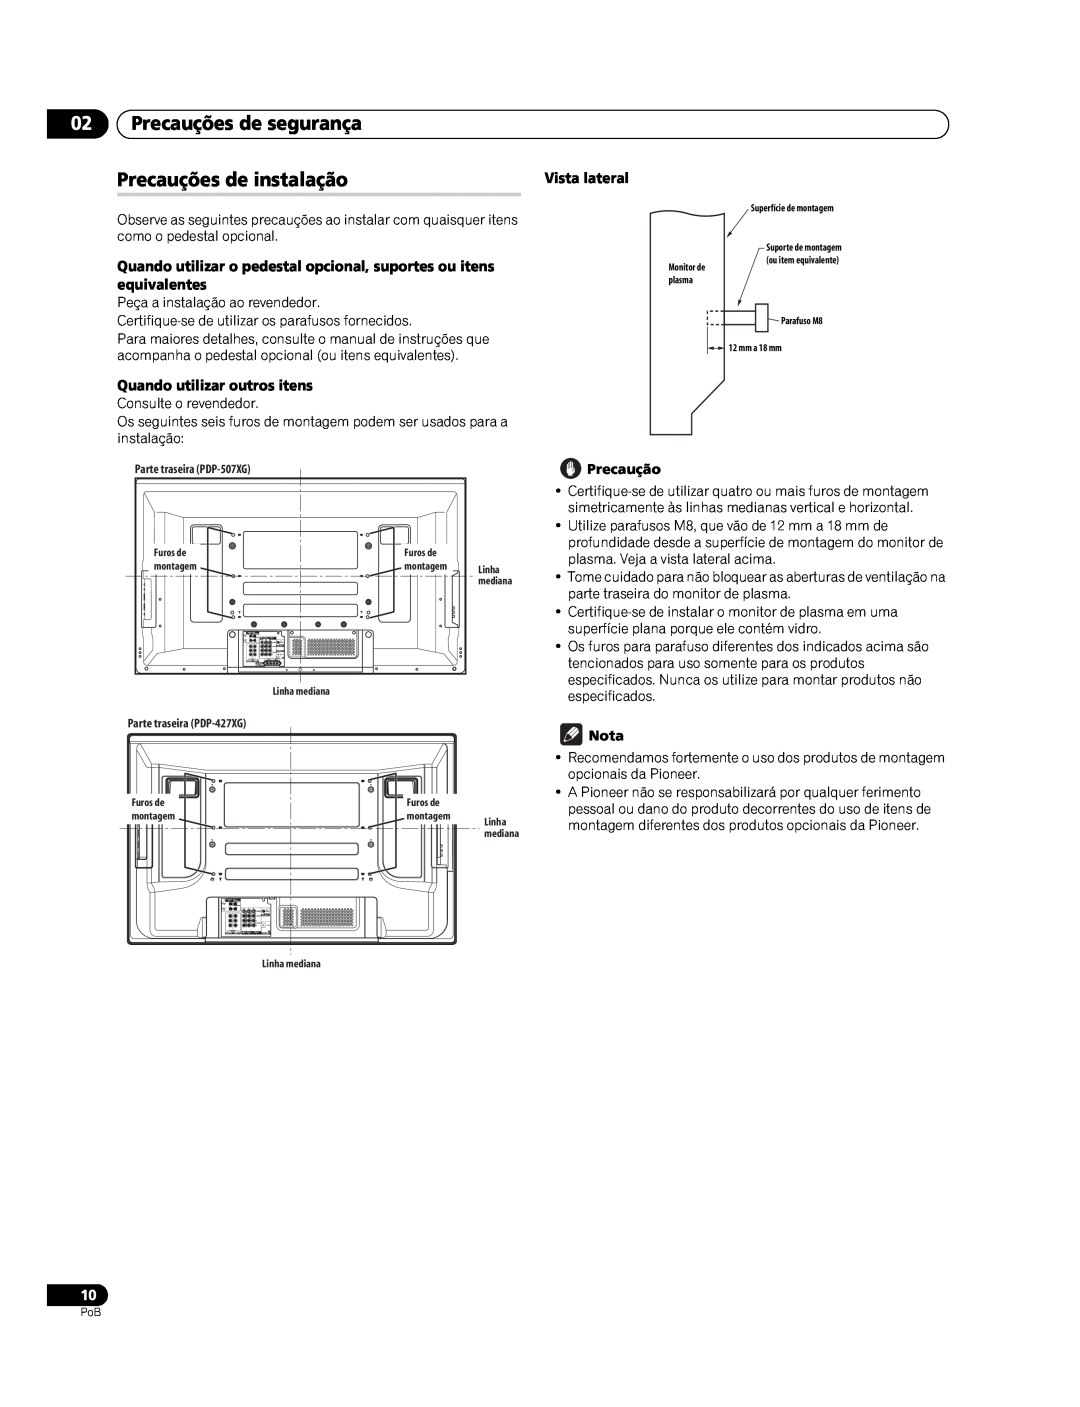 Pioneer PDP-427XG manual Precauções de segurança, Precauções de instalação, Quando utilizar outros itens, Vista lateral 